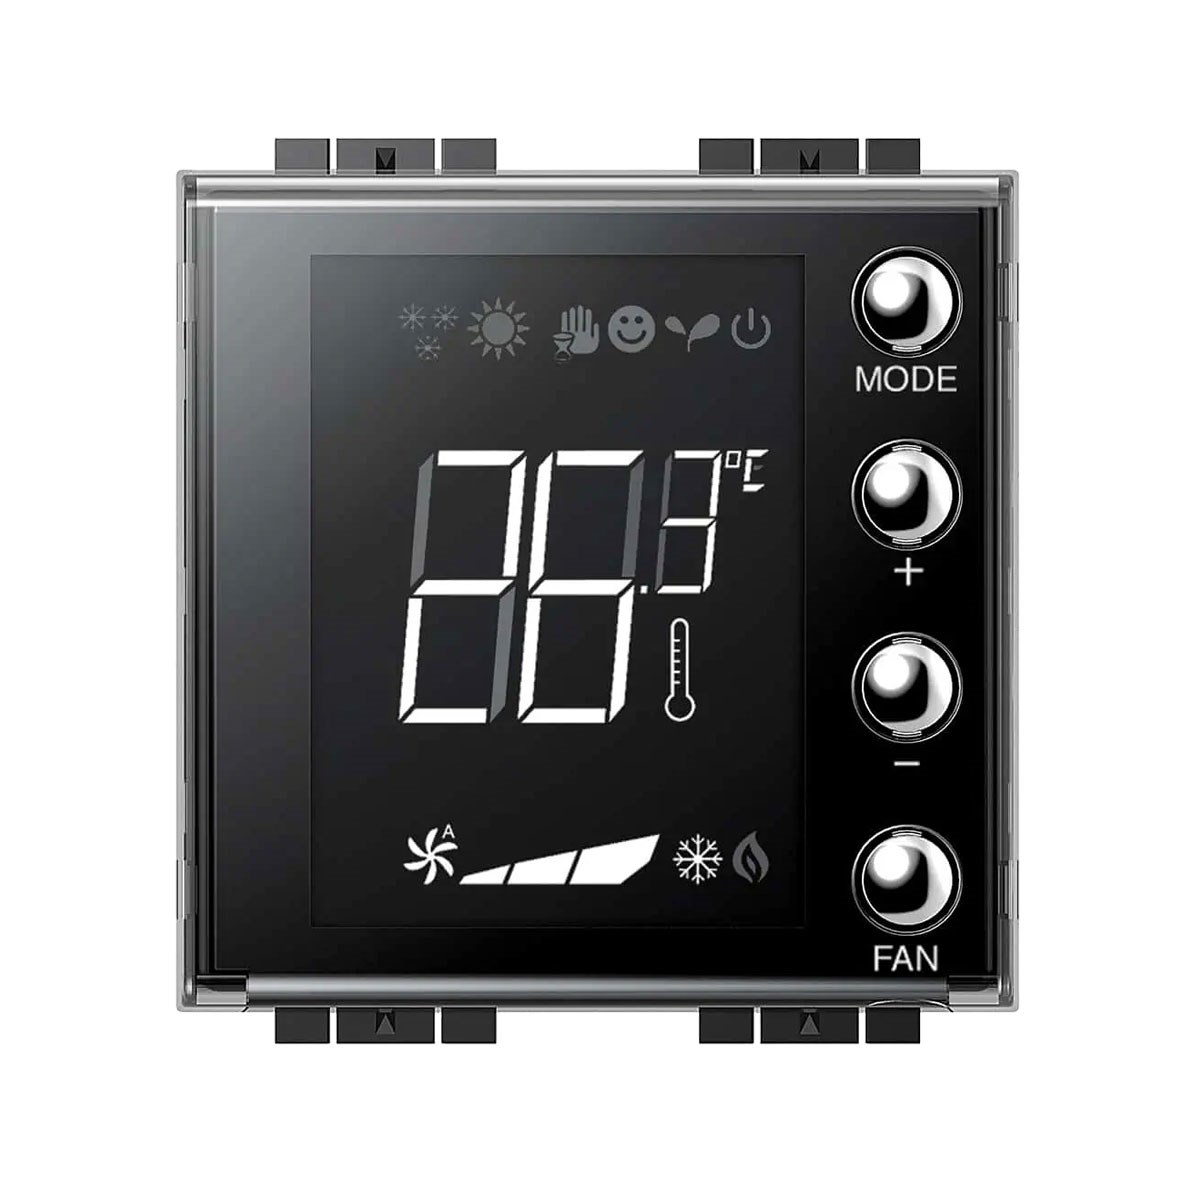 Lieferanten von kundenspezifischen Thermostatsteckdosen - Großhandelsservice